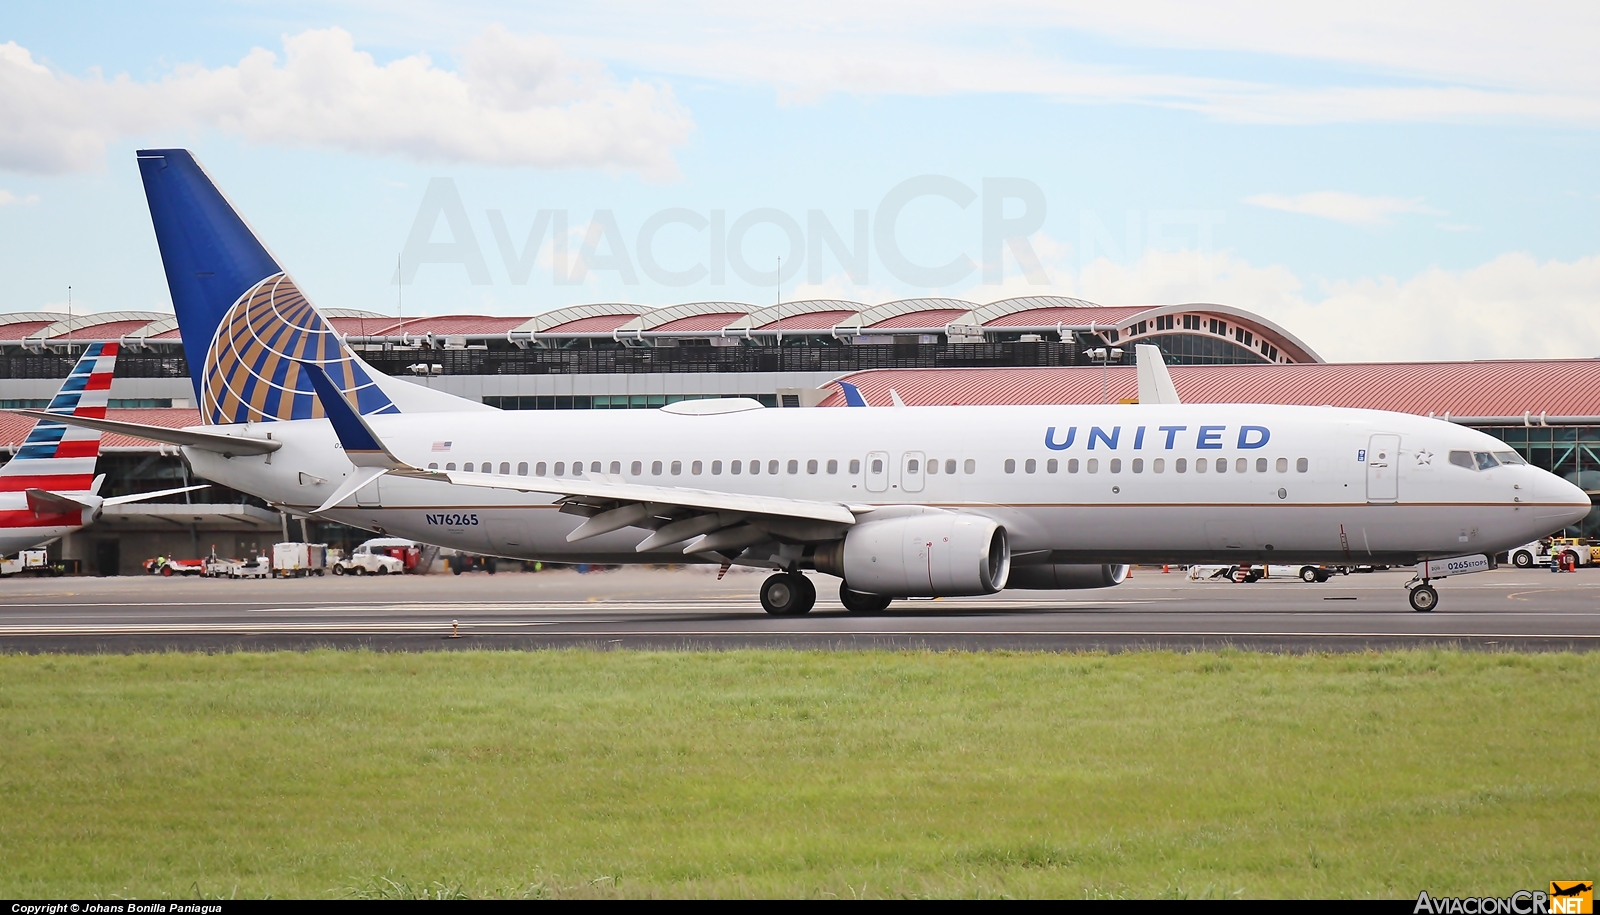 N76265 - Boeing 737-800 - United Airlines